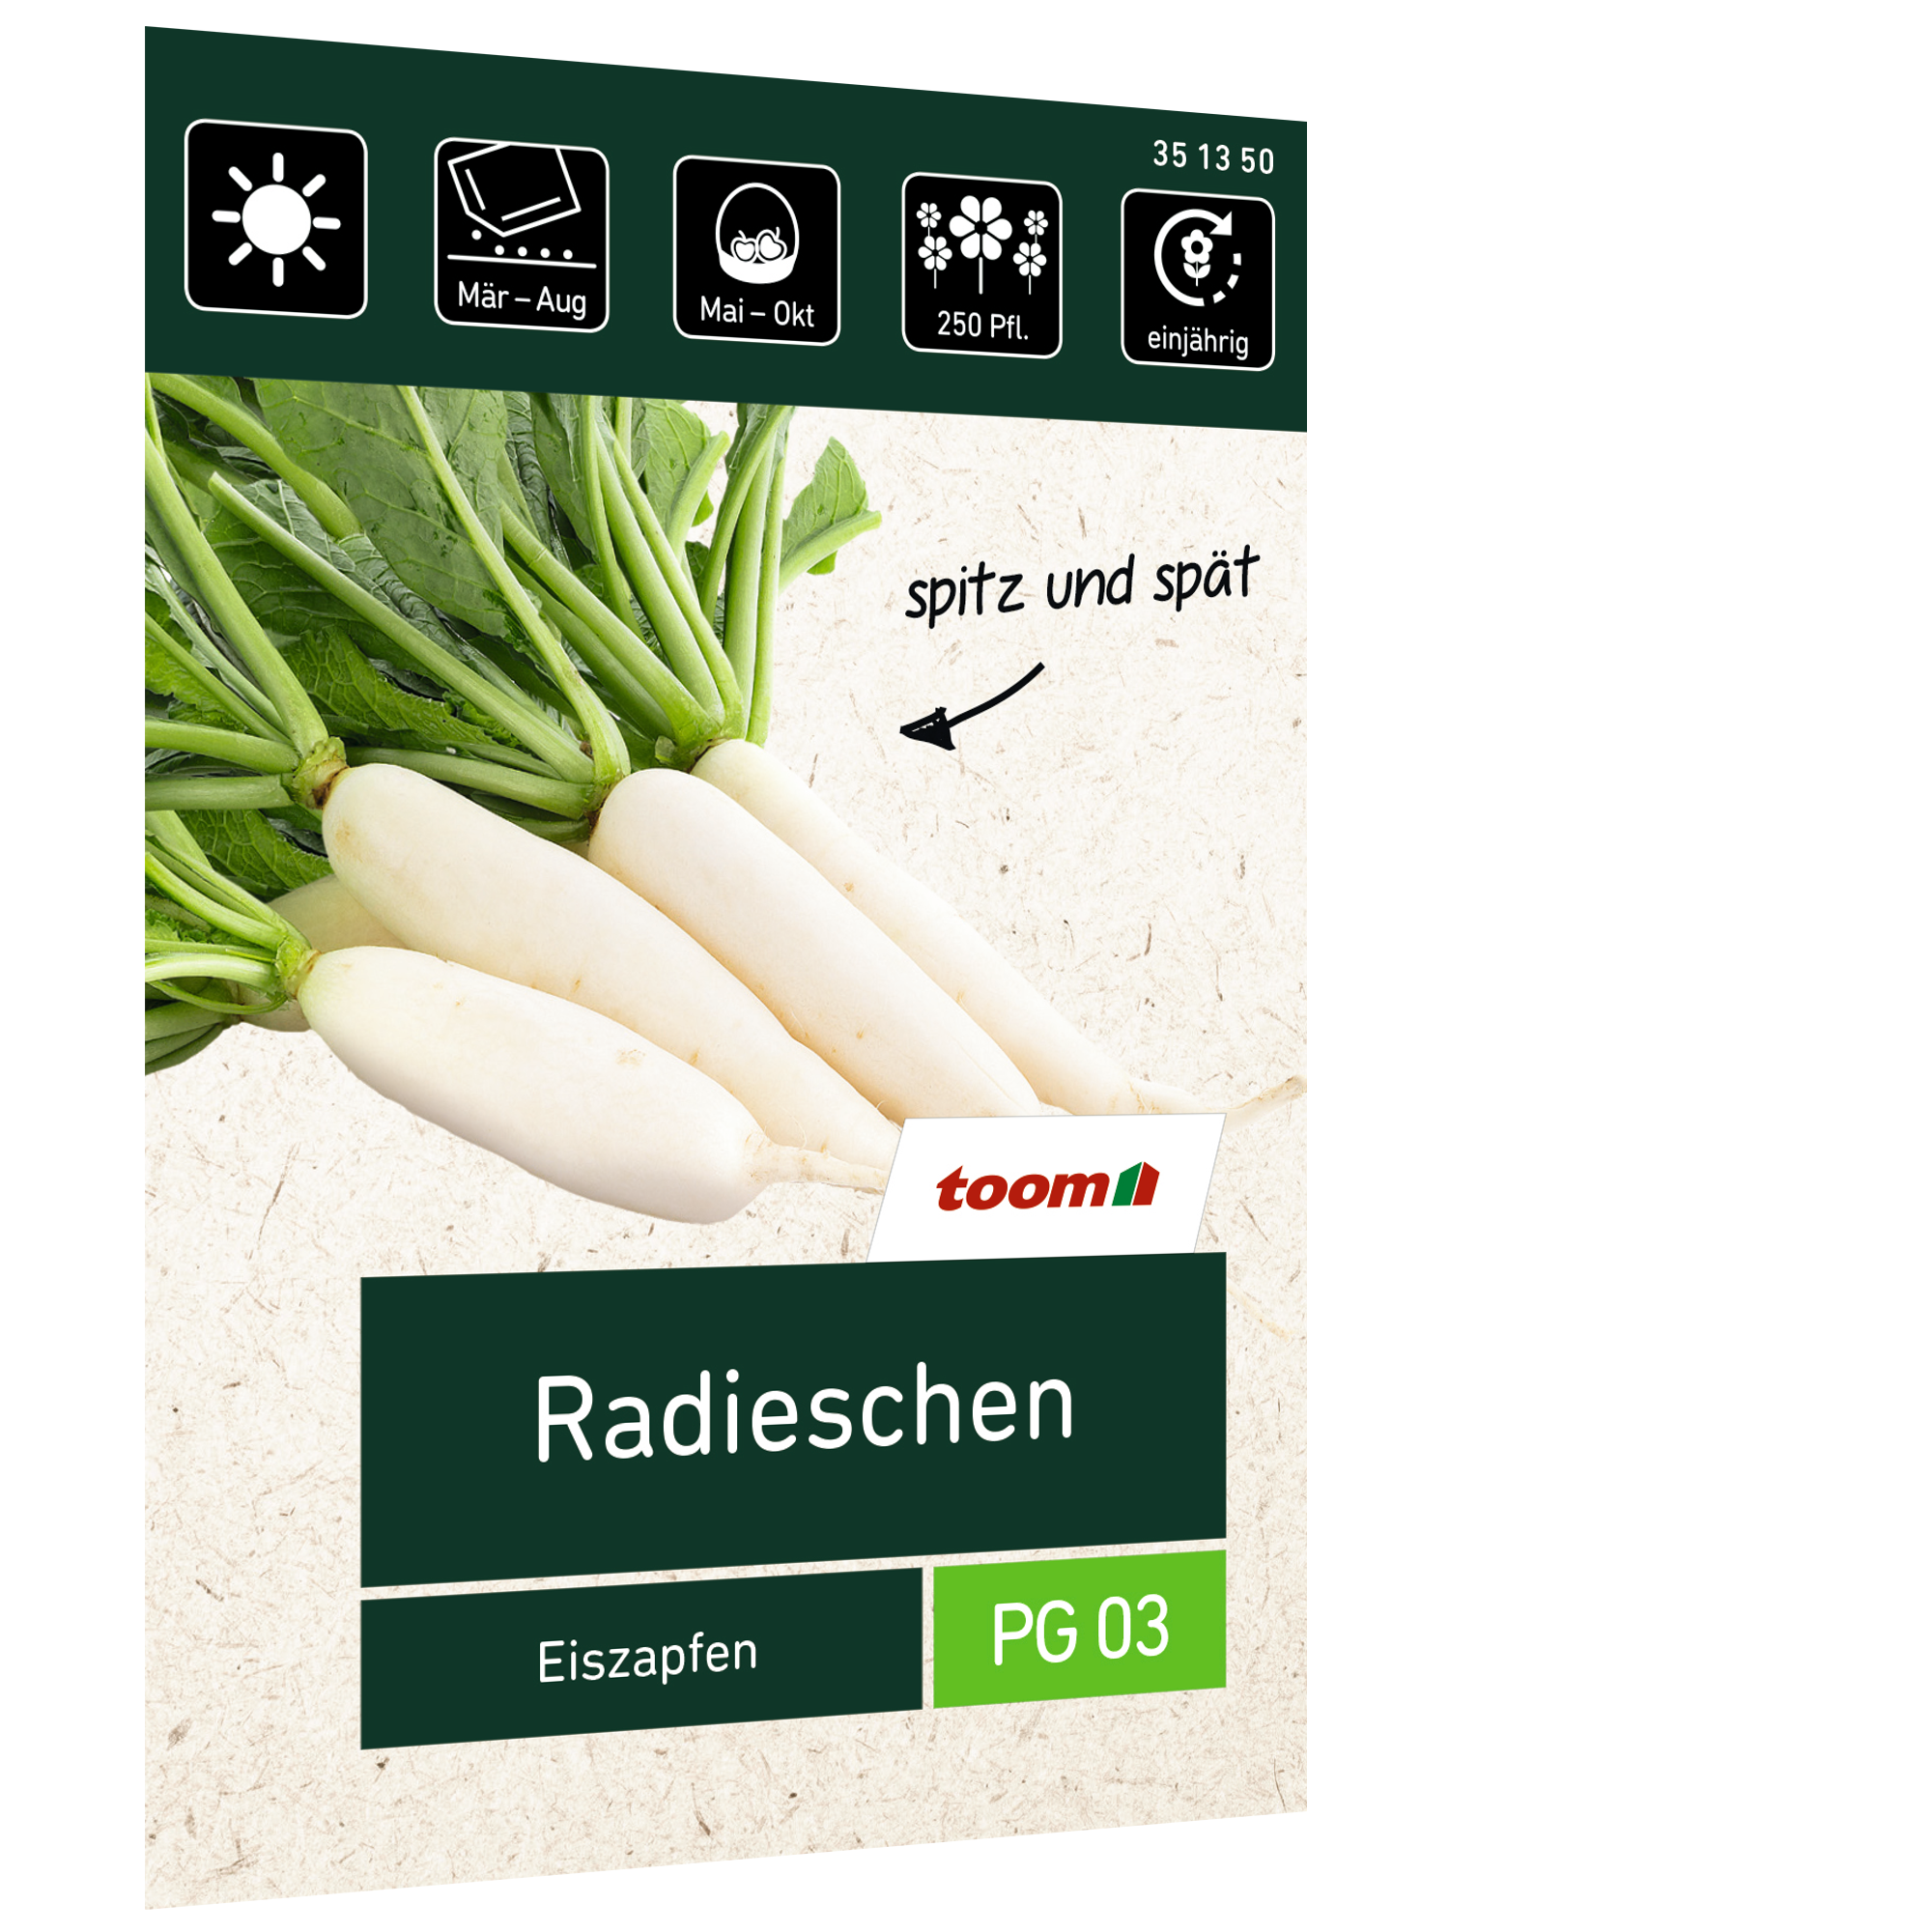 Radieschen 'Eiszapfen' + product picture